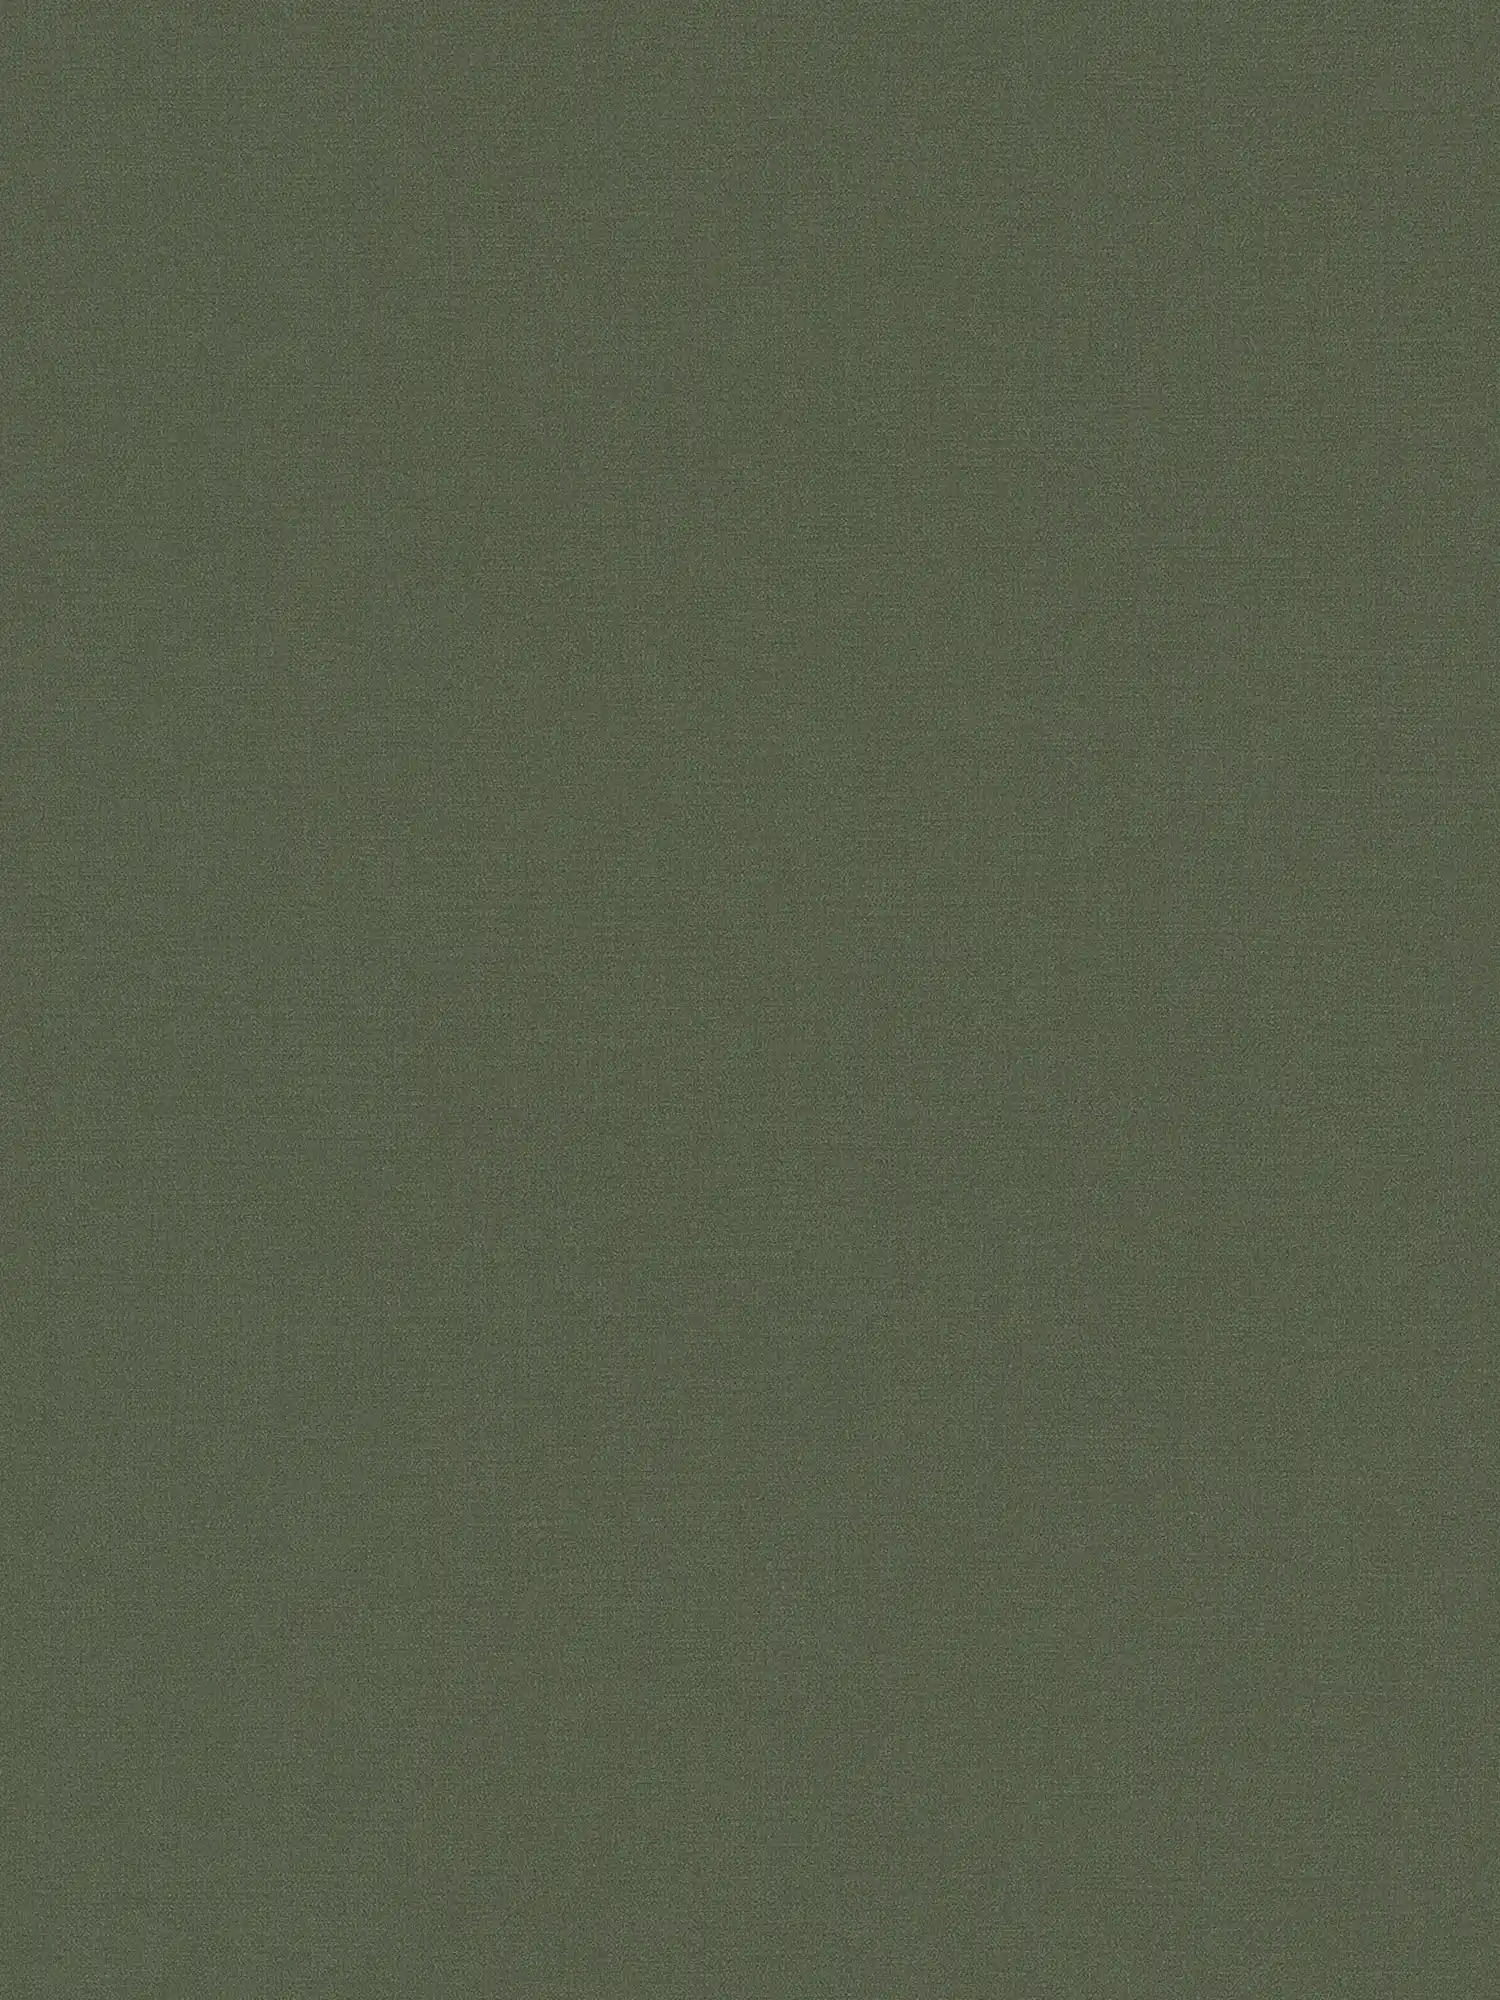 Einfarbige Vliestapete in auffälligen Farben – Grün
